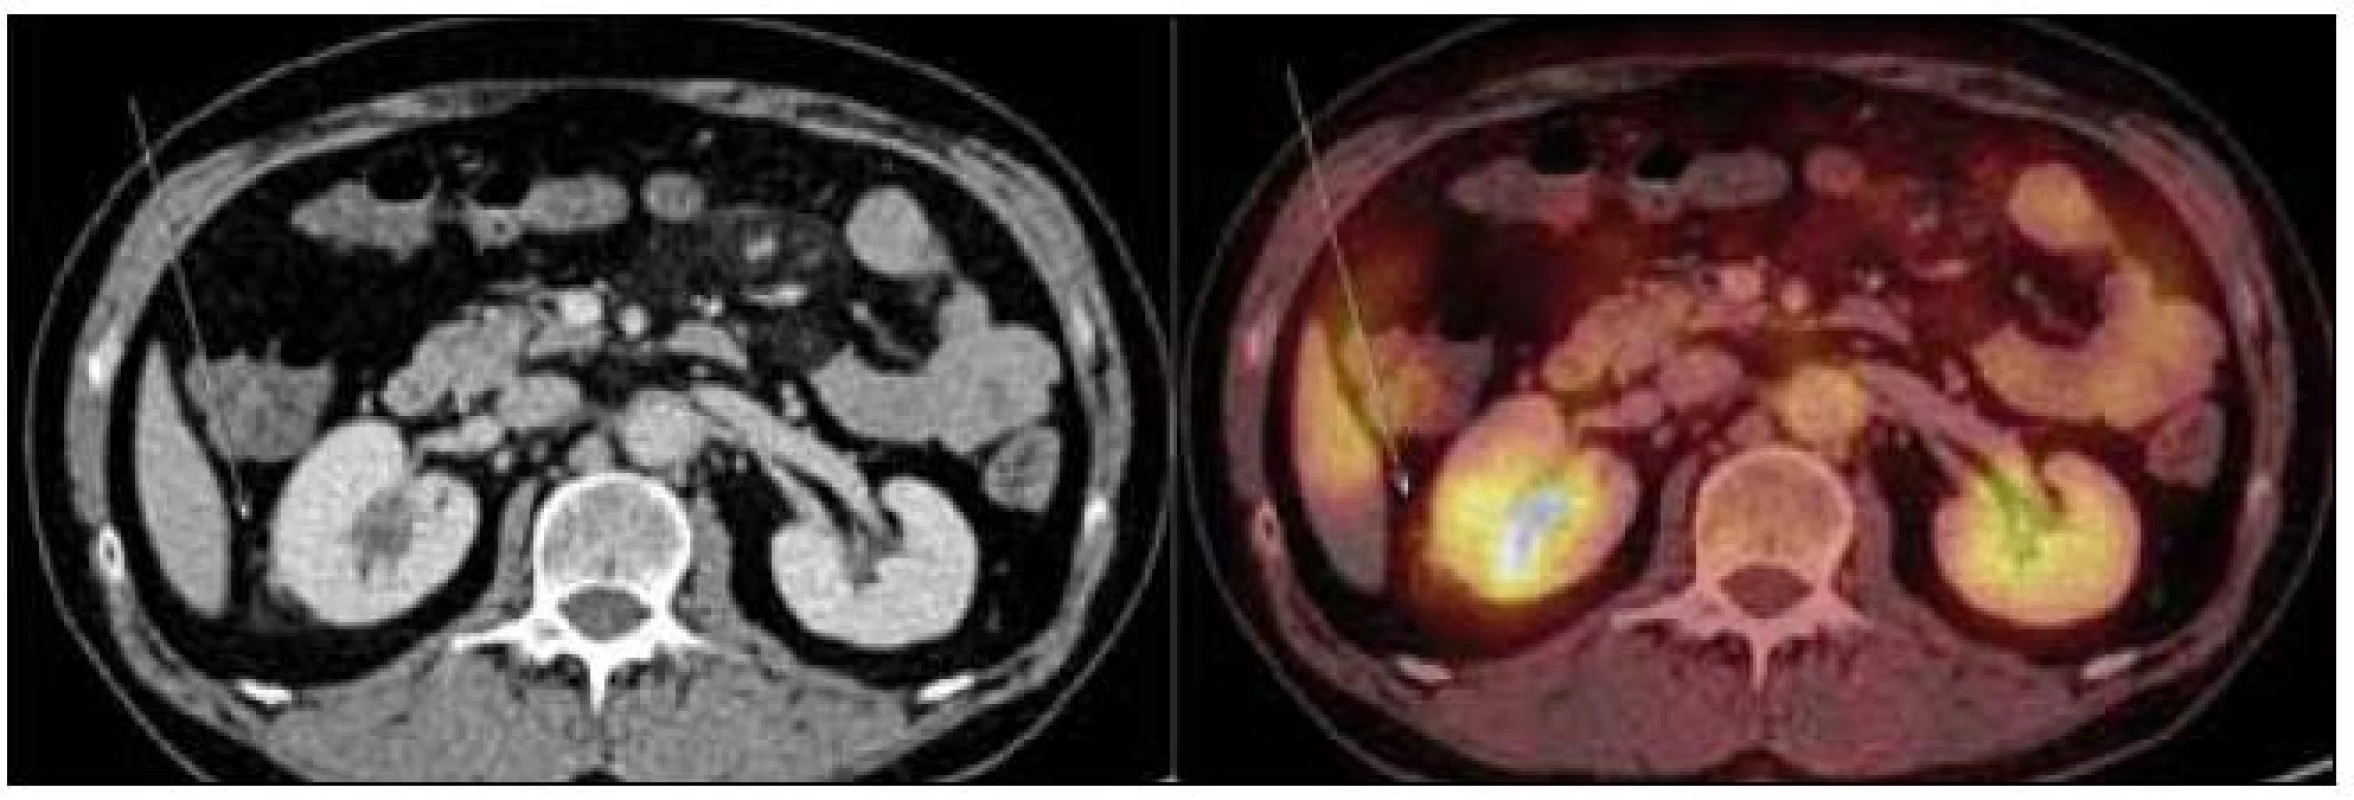 PET-CT zobrazení břicha. Zvýšení denzity perirenálního tuku, zneostření kontury pravé ledviny – diskrétní známky vznikajících fibrózních změn (označeno šipkou). Aktivní moč v dutém systému ledvin, perirenálně evidentní hypermetabolizmus glukózy nedetekujeme.